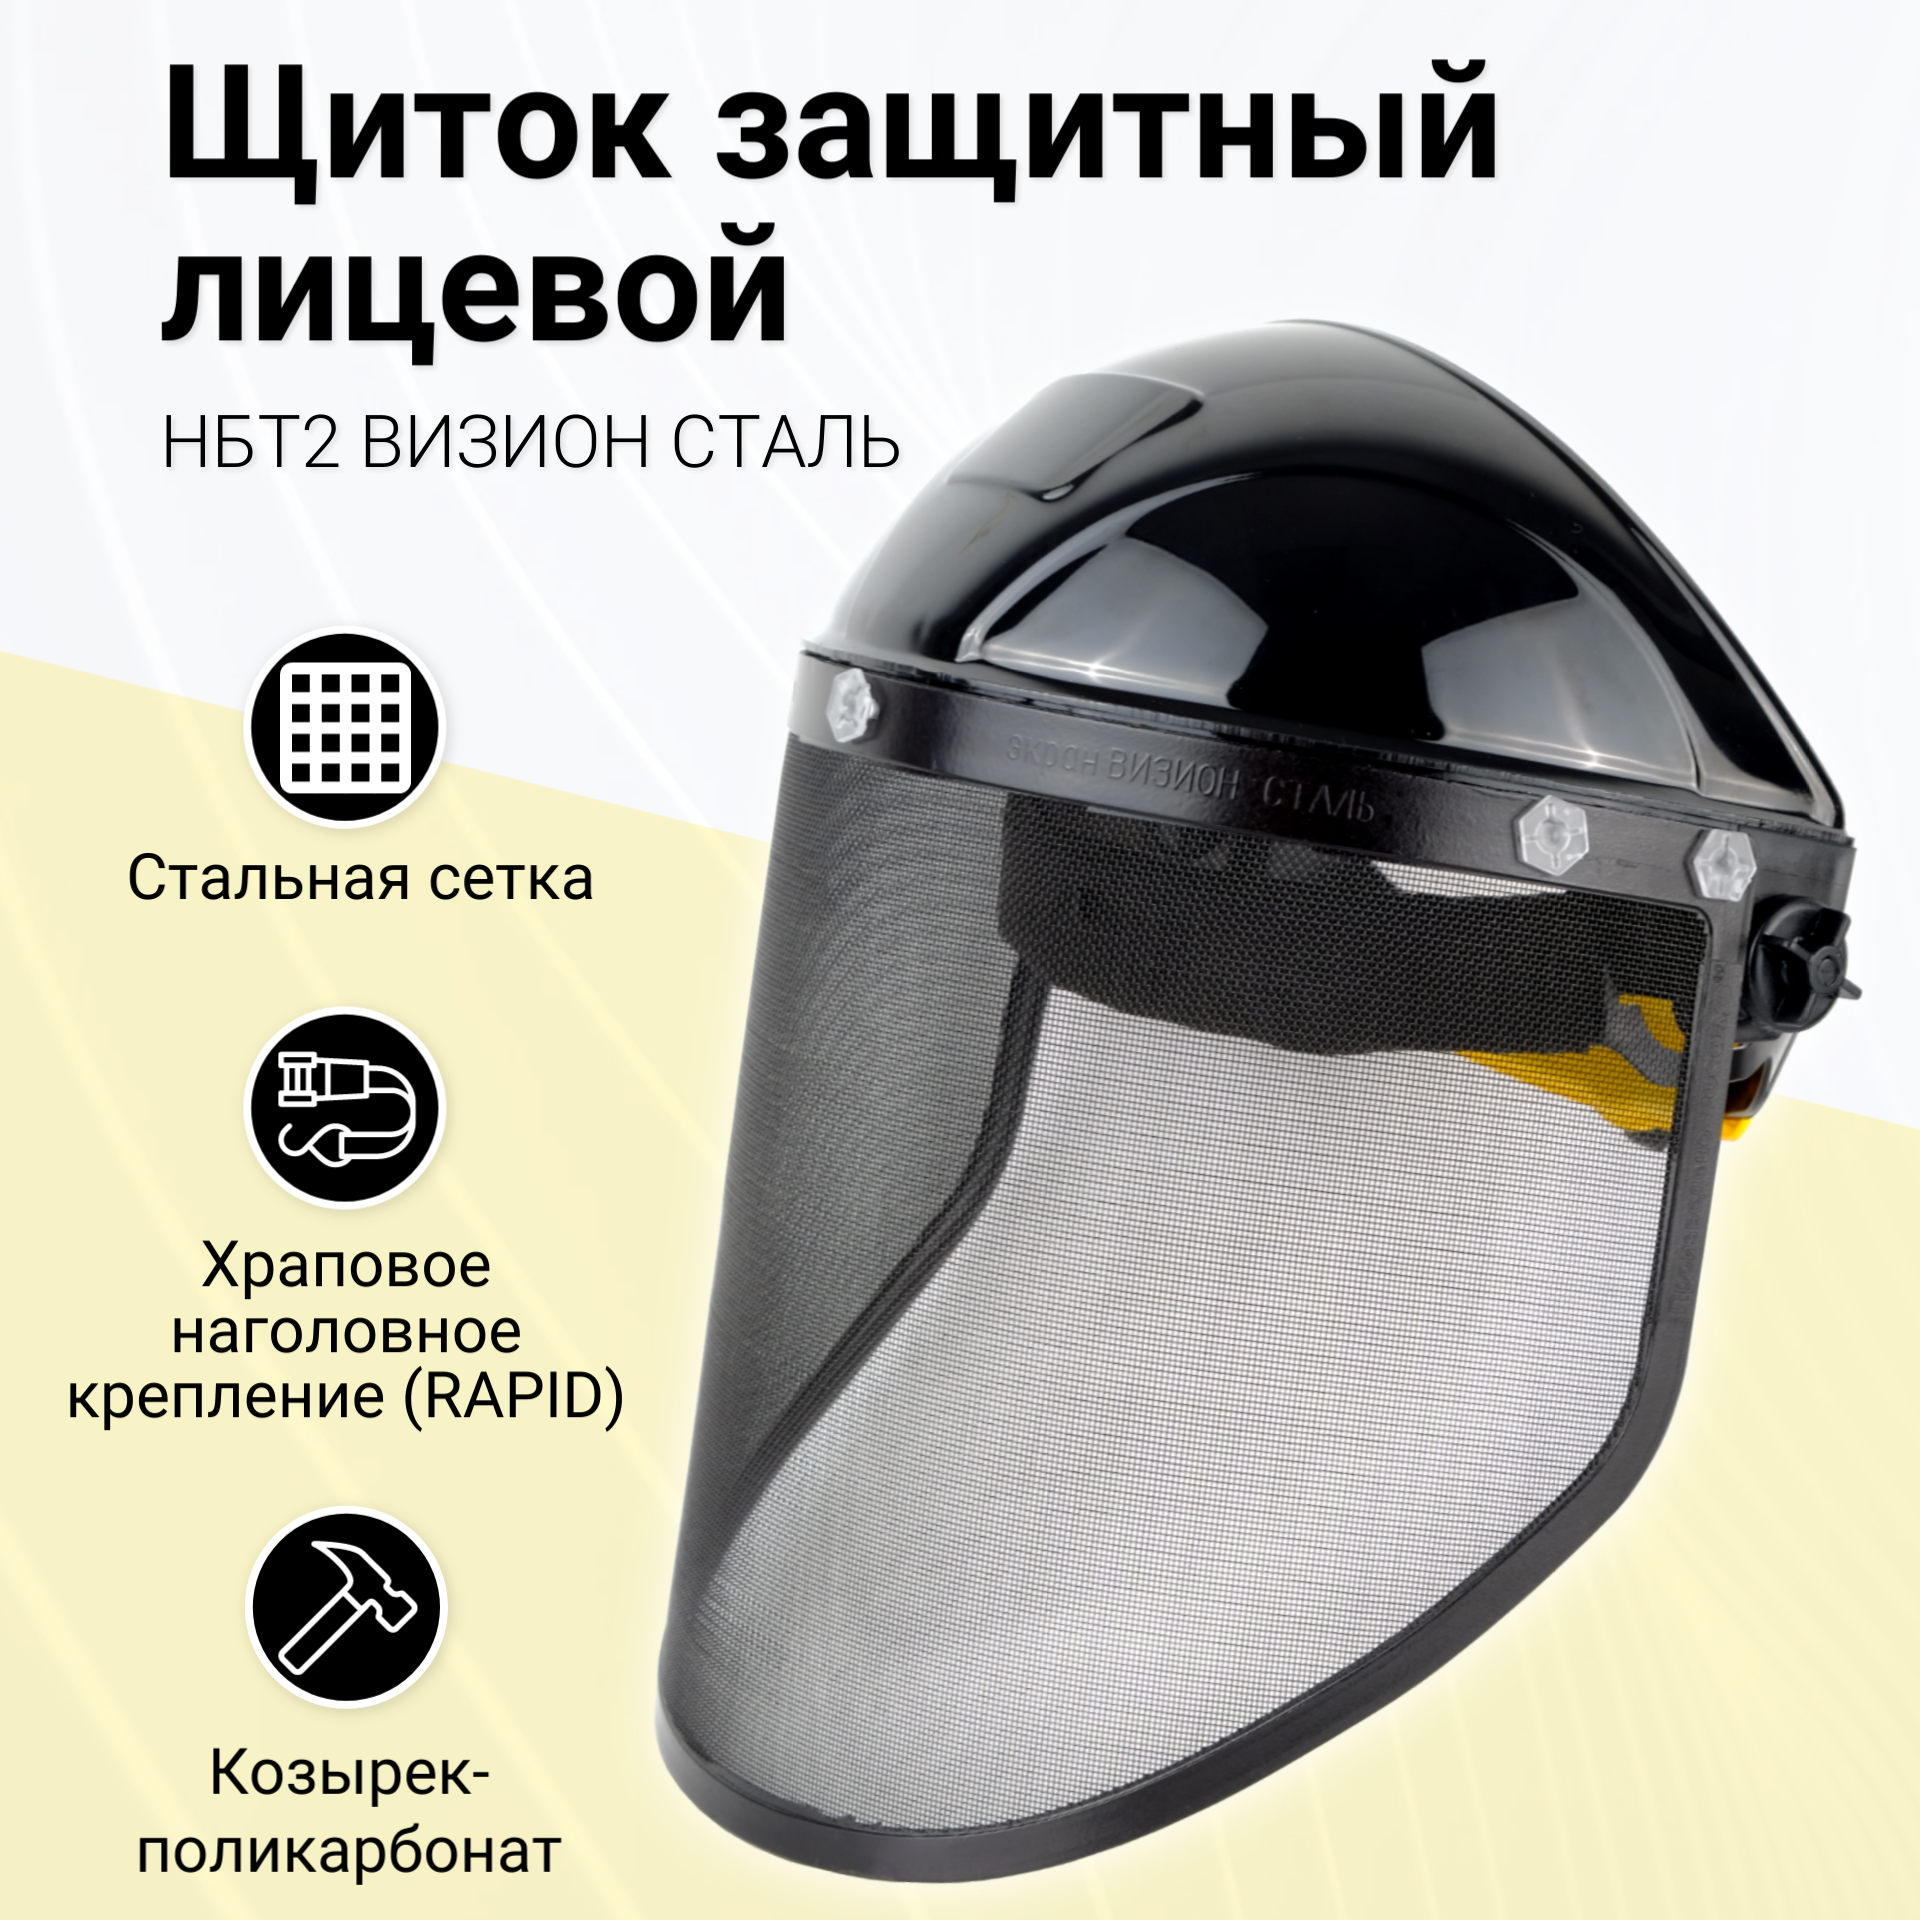 Щиток защитный для лица / маска защитная РОСОМЗ НБТ2 визион сталь экран-сетка арт. 425416